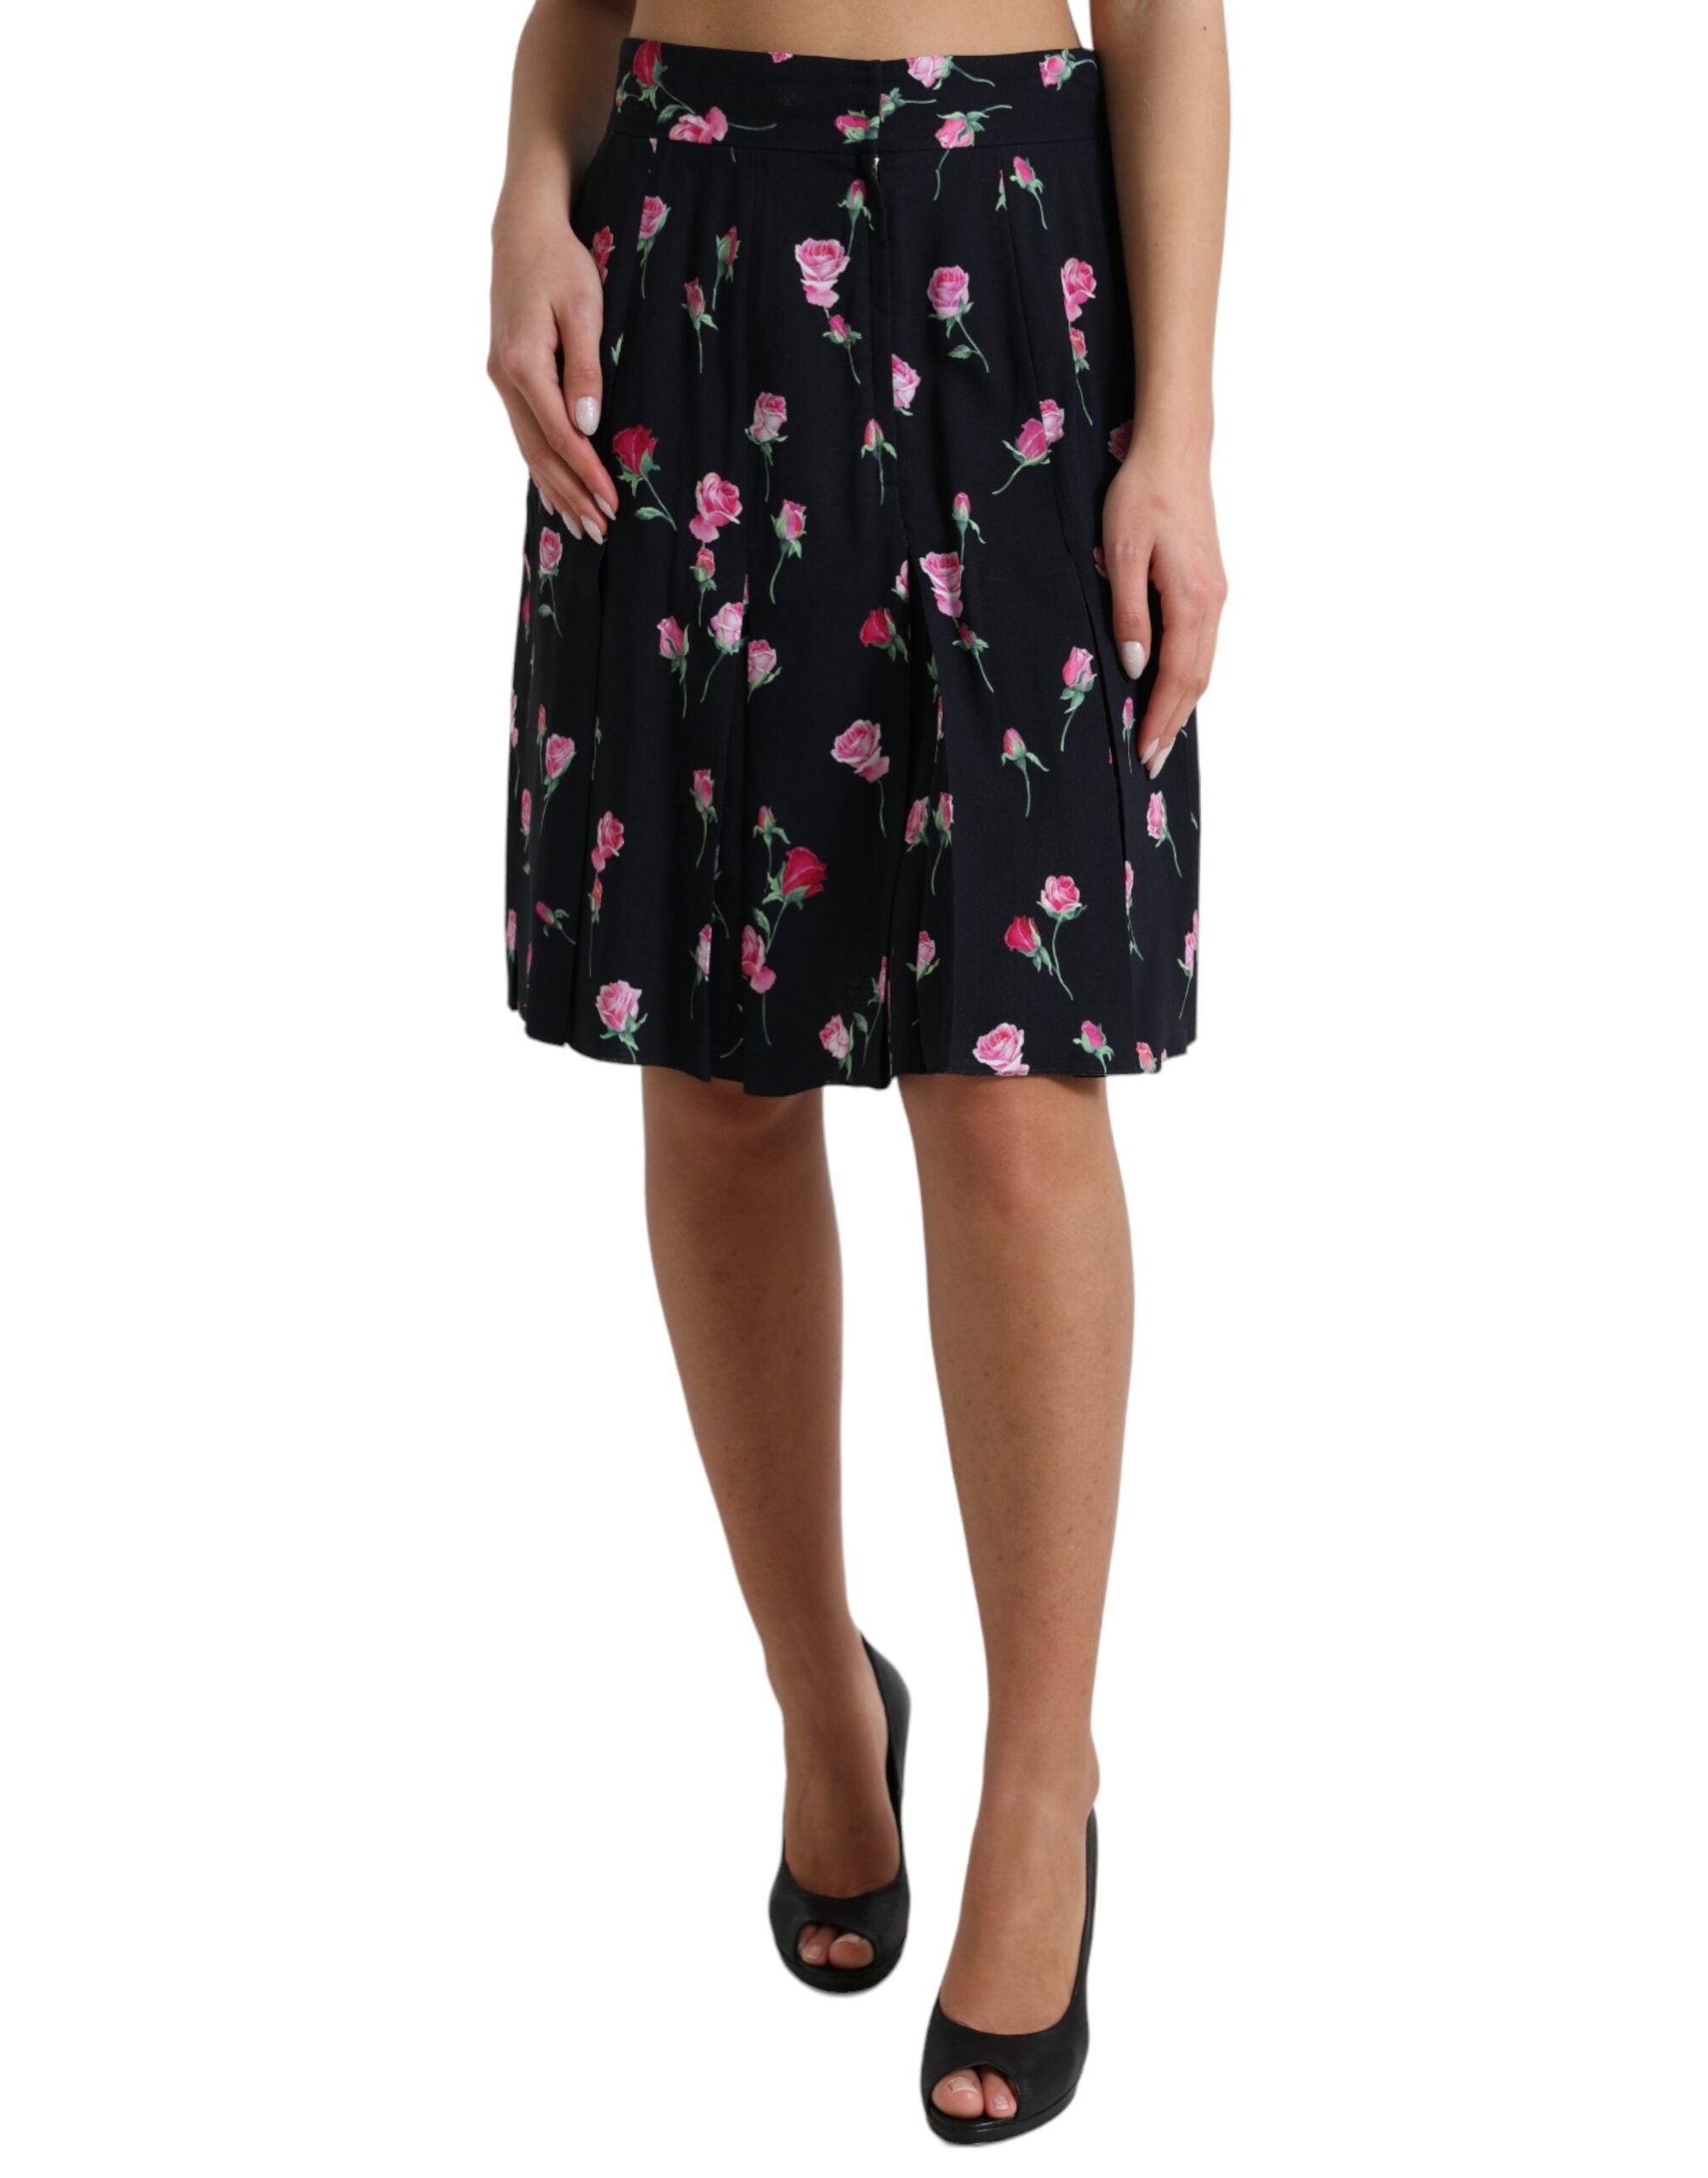 Elegant Floral A-Line Knee-Length Skirt